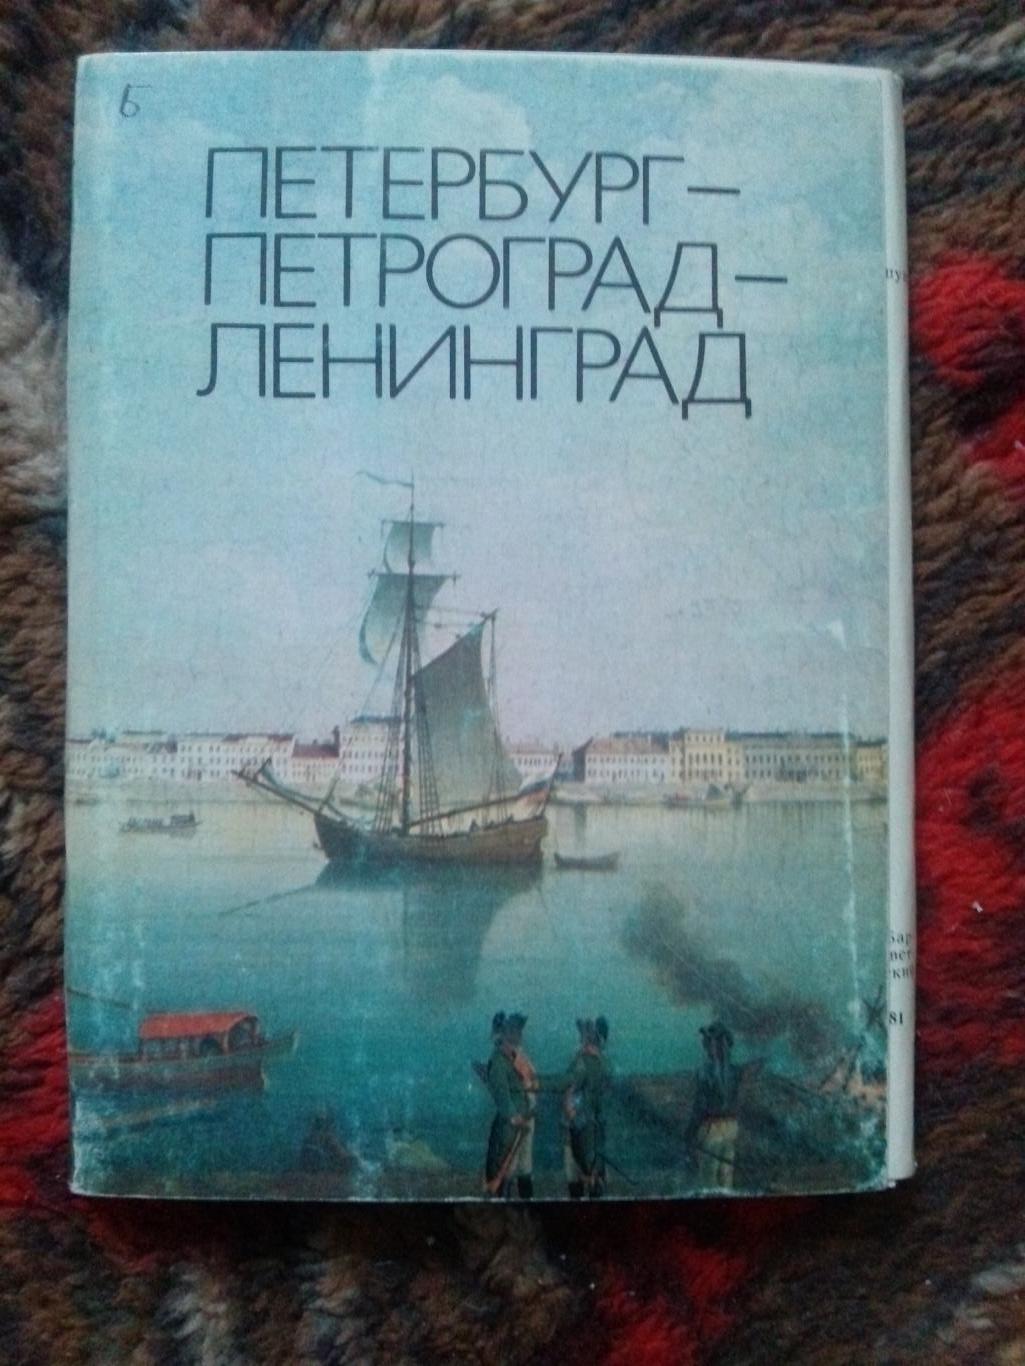 Петербург-Петроград-Ленингра д (живопись) 1982 г. полный набор - 16 открыток